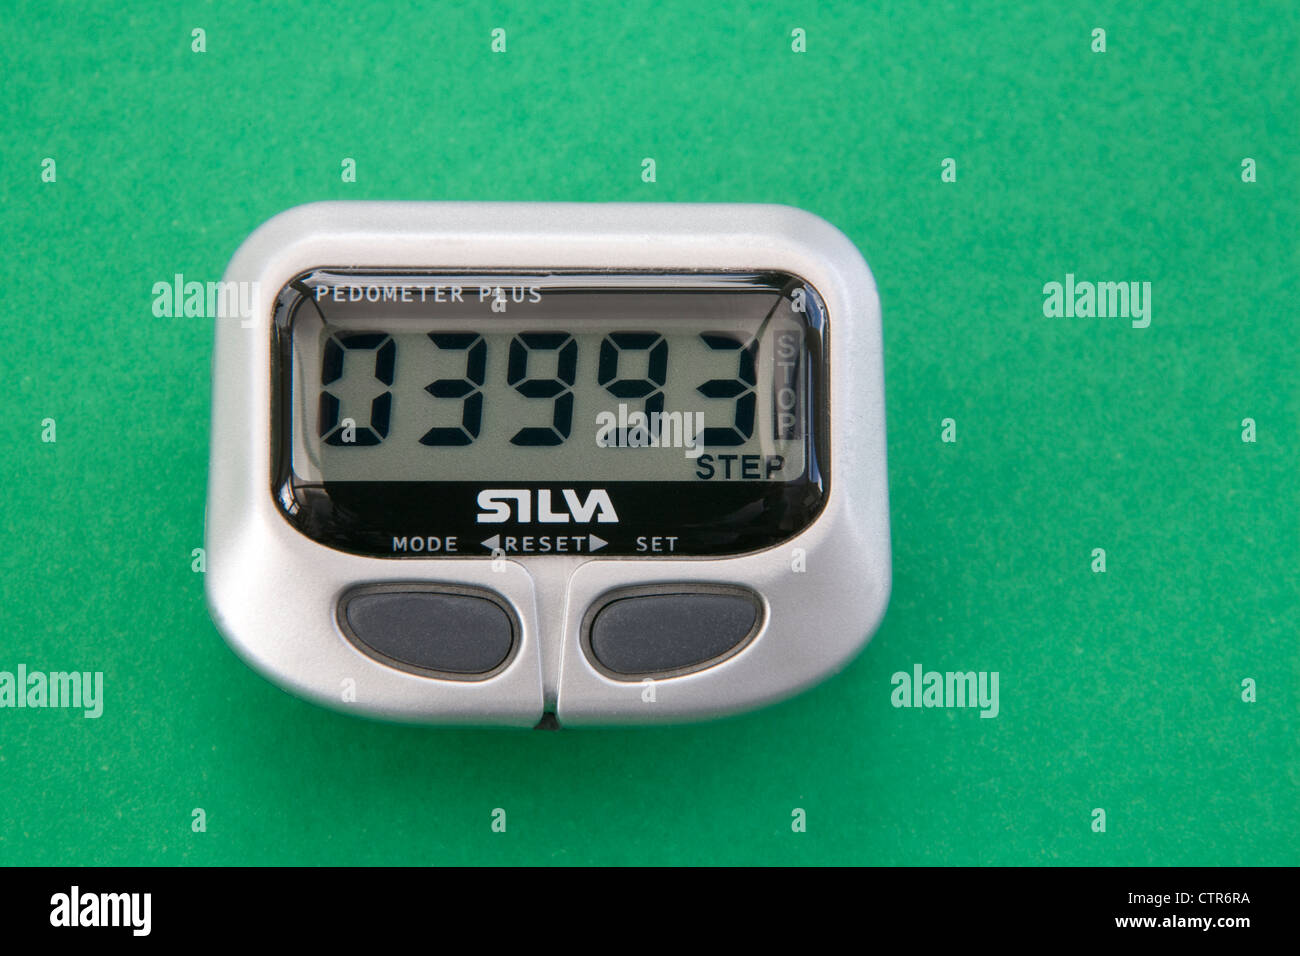 Silva SMT-6 step-o-meter Pedometer 